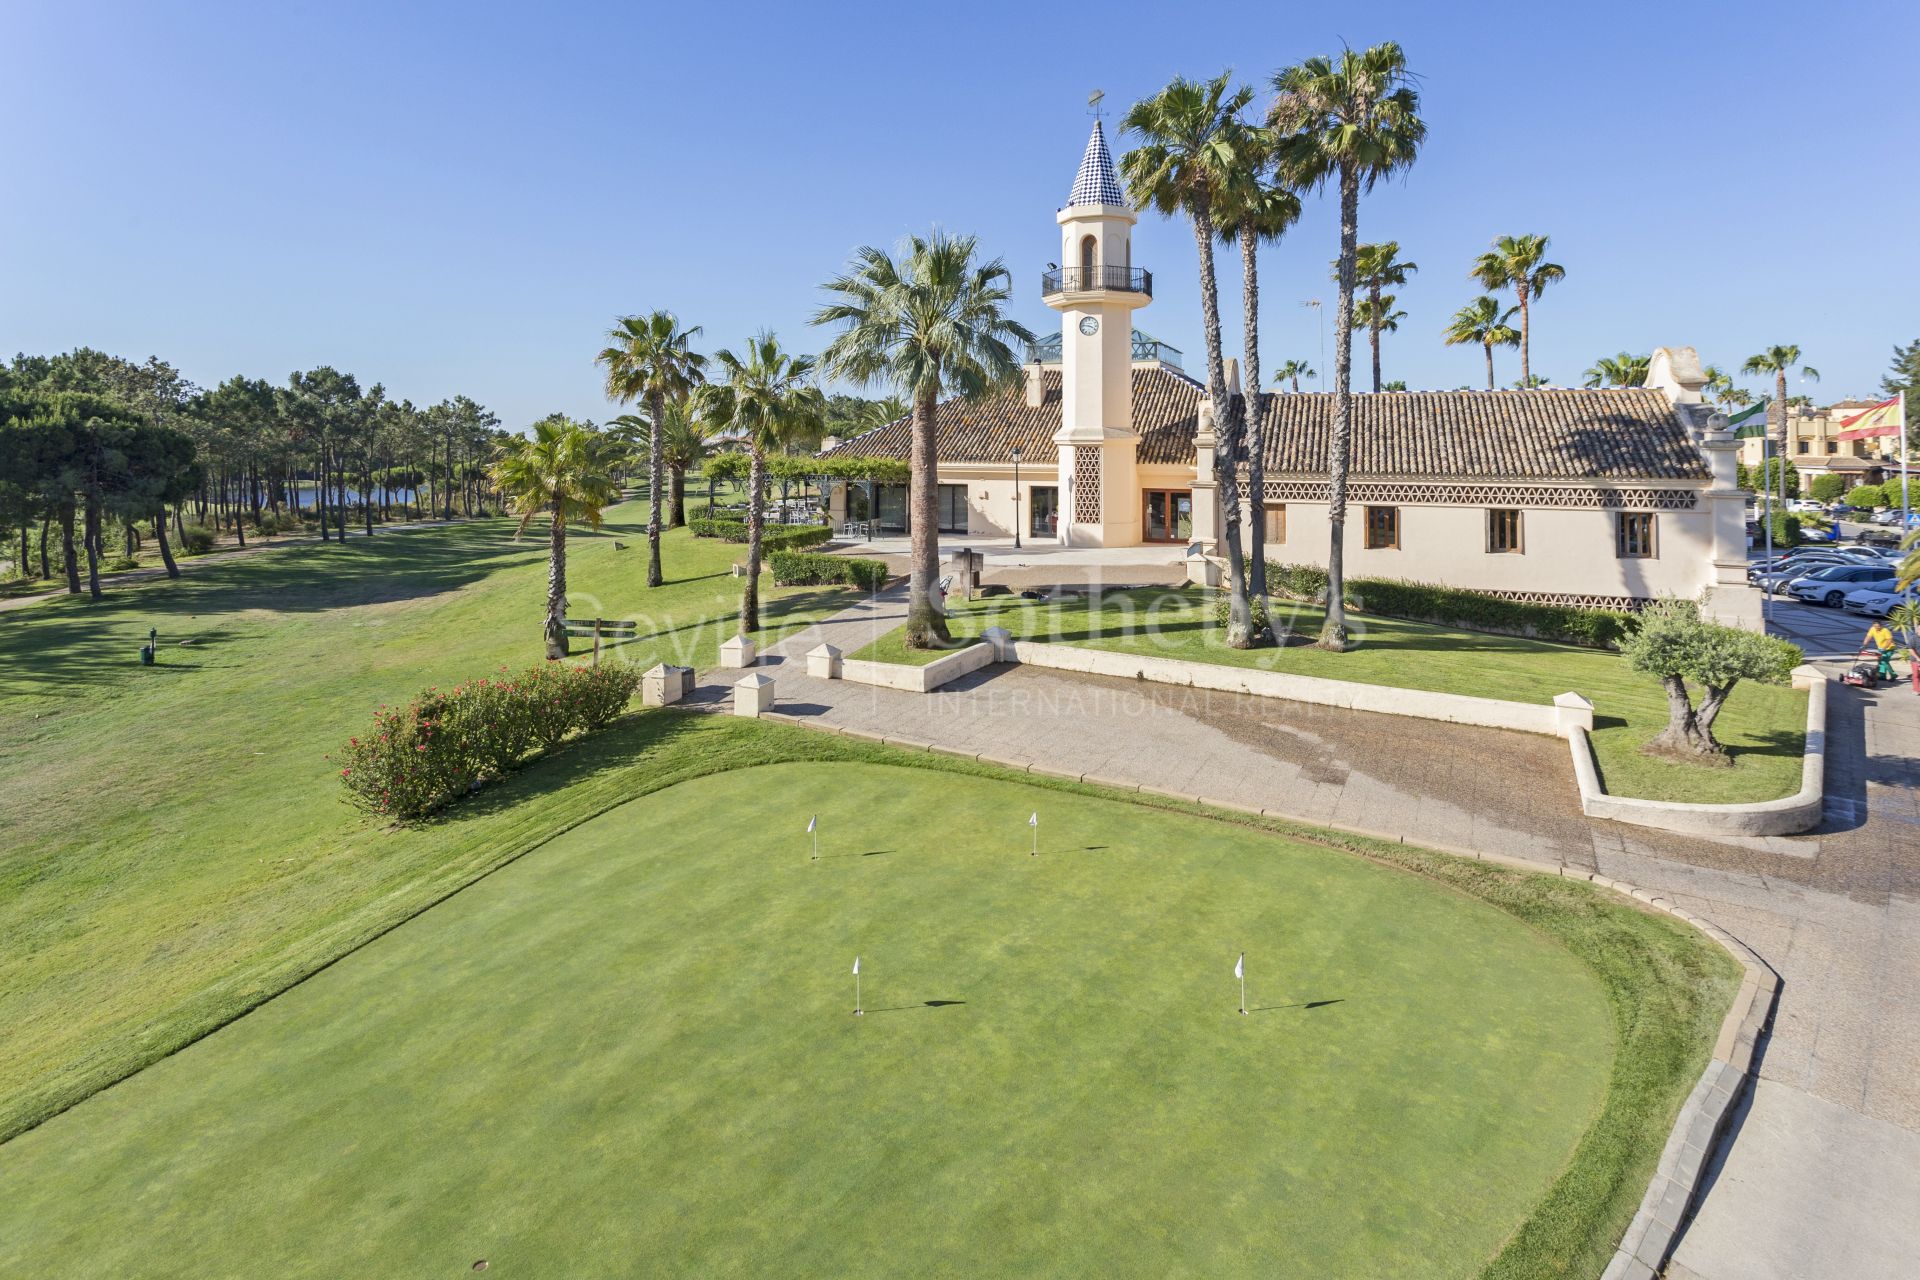 Apartamento reformado con licencia turística en Golf Resort, Islantilla - Huelva